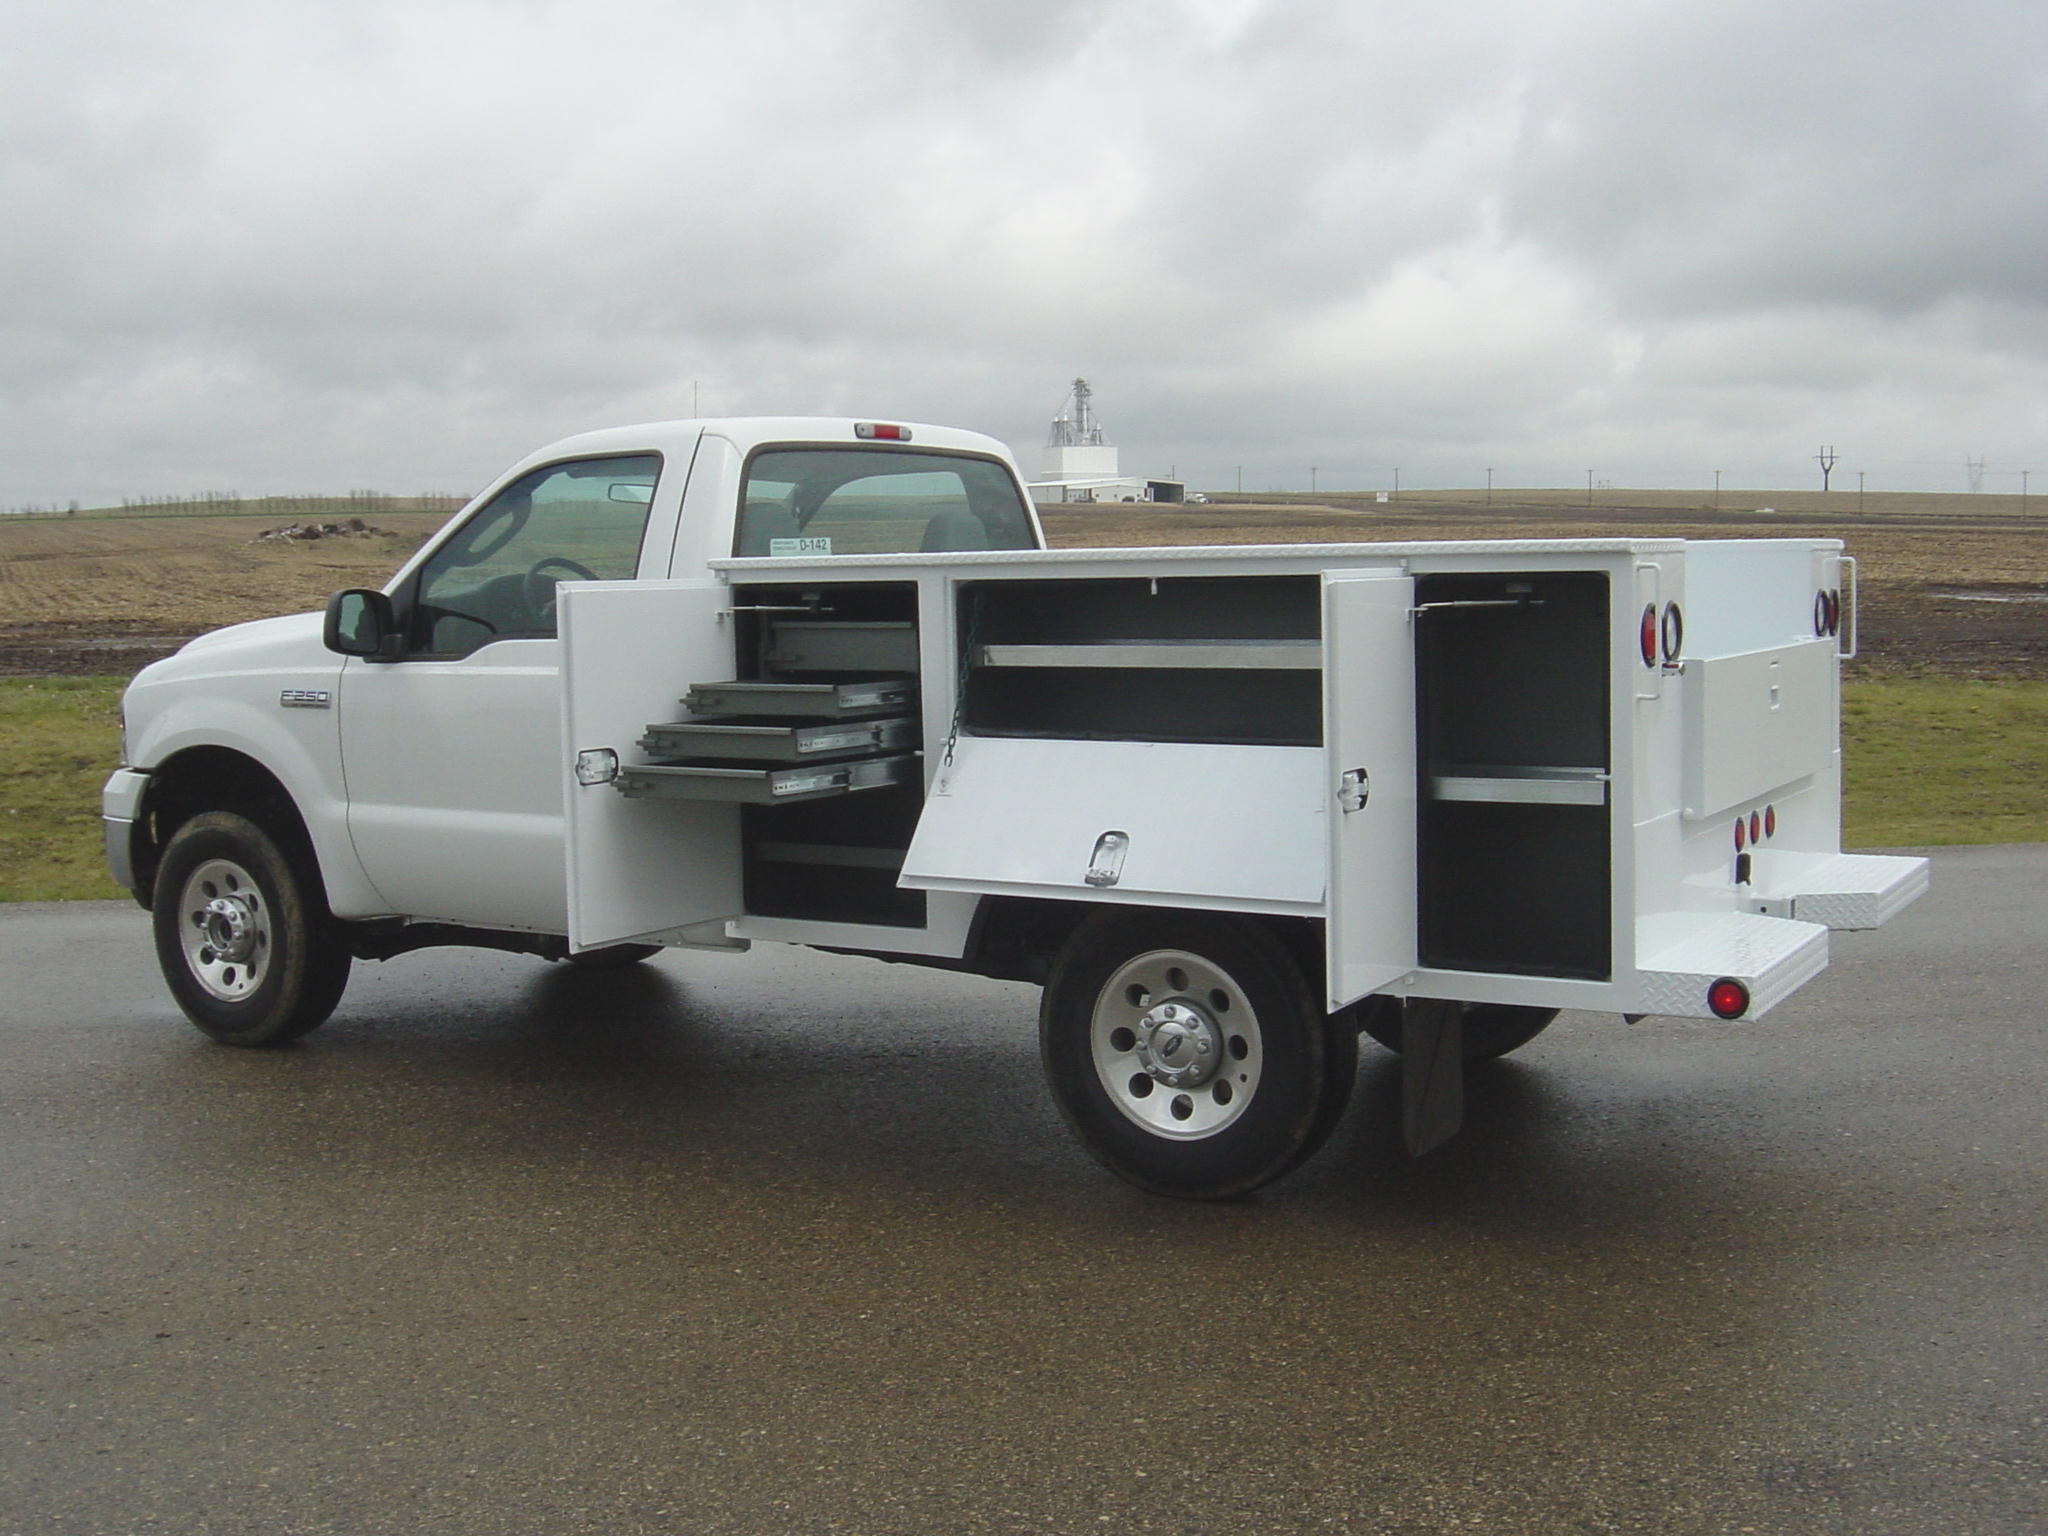 Dakota service bodies installed by Oklahoma Upfitters